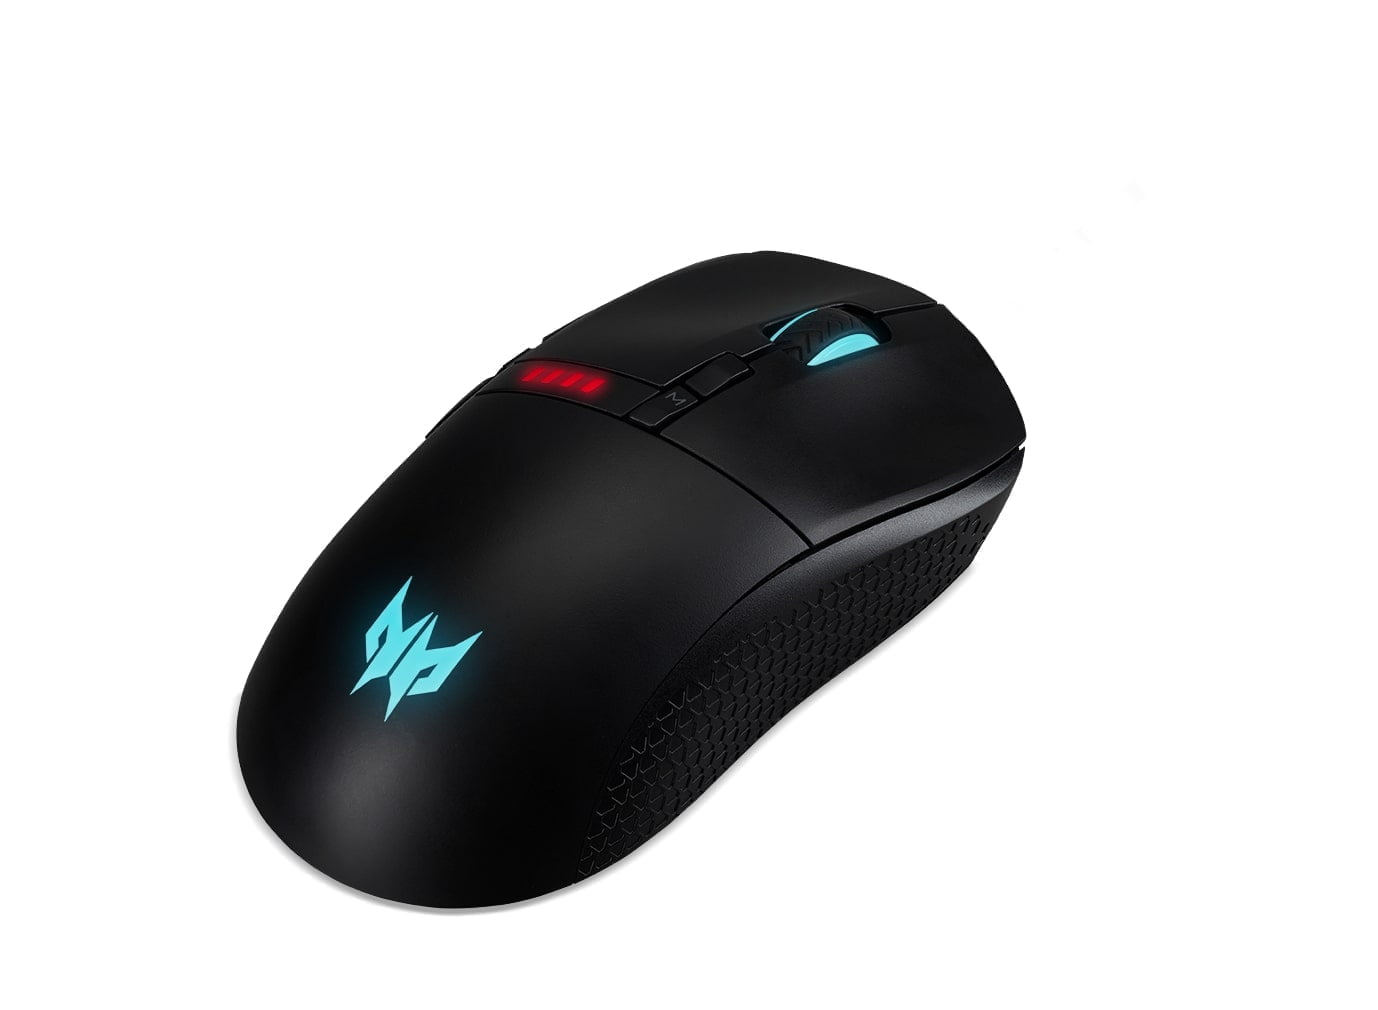 Predator Mouse Cestus350 02 MMOSITE - Thông tin công nghệ, review, thủ thuật PC, gaming